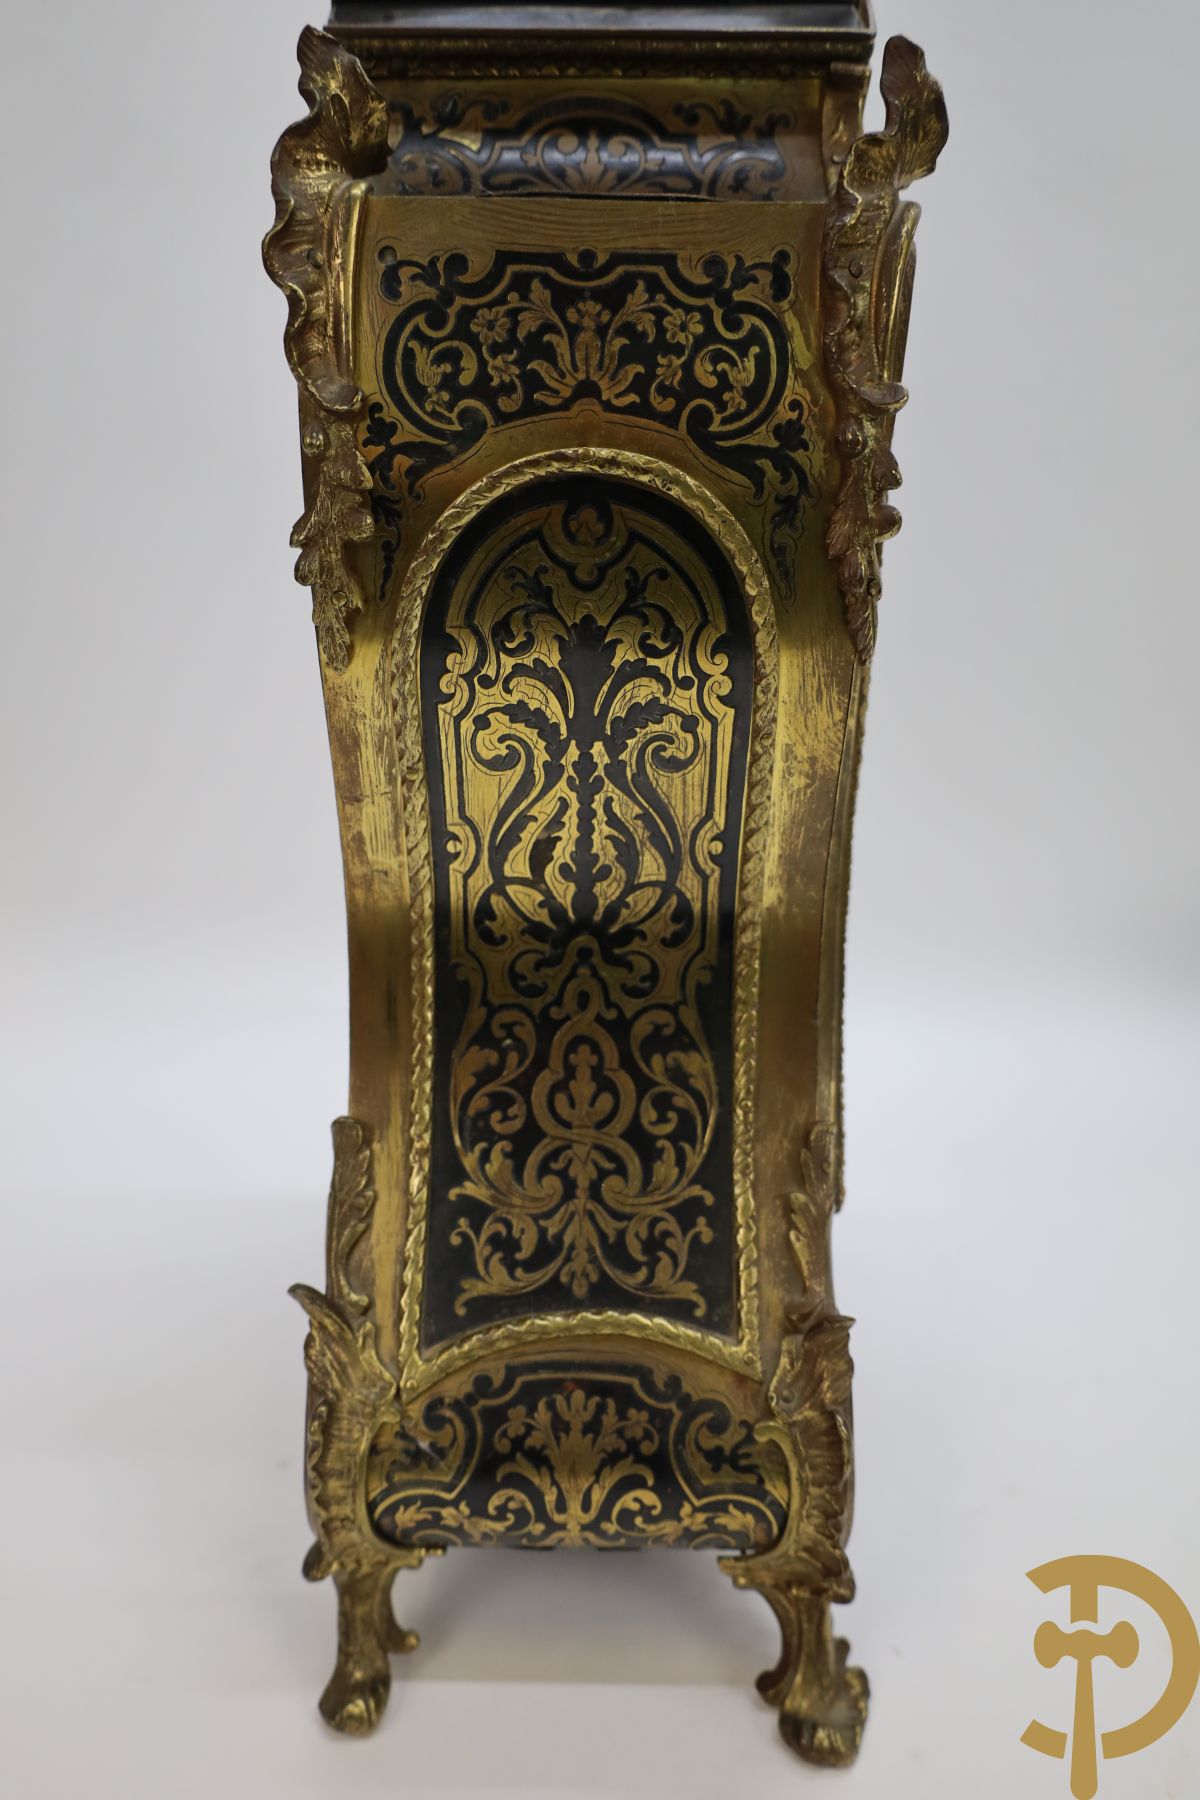 Napoleon III boulle kartel bezet met bronzen ornamenten van accanthusranken - bovenaan bekroond met trompetspelende cupido - op muurconsole